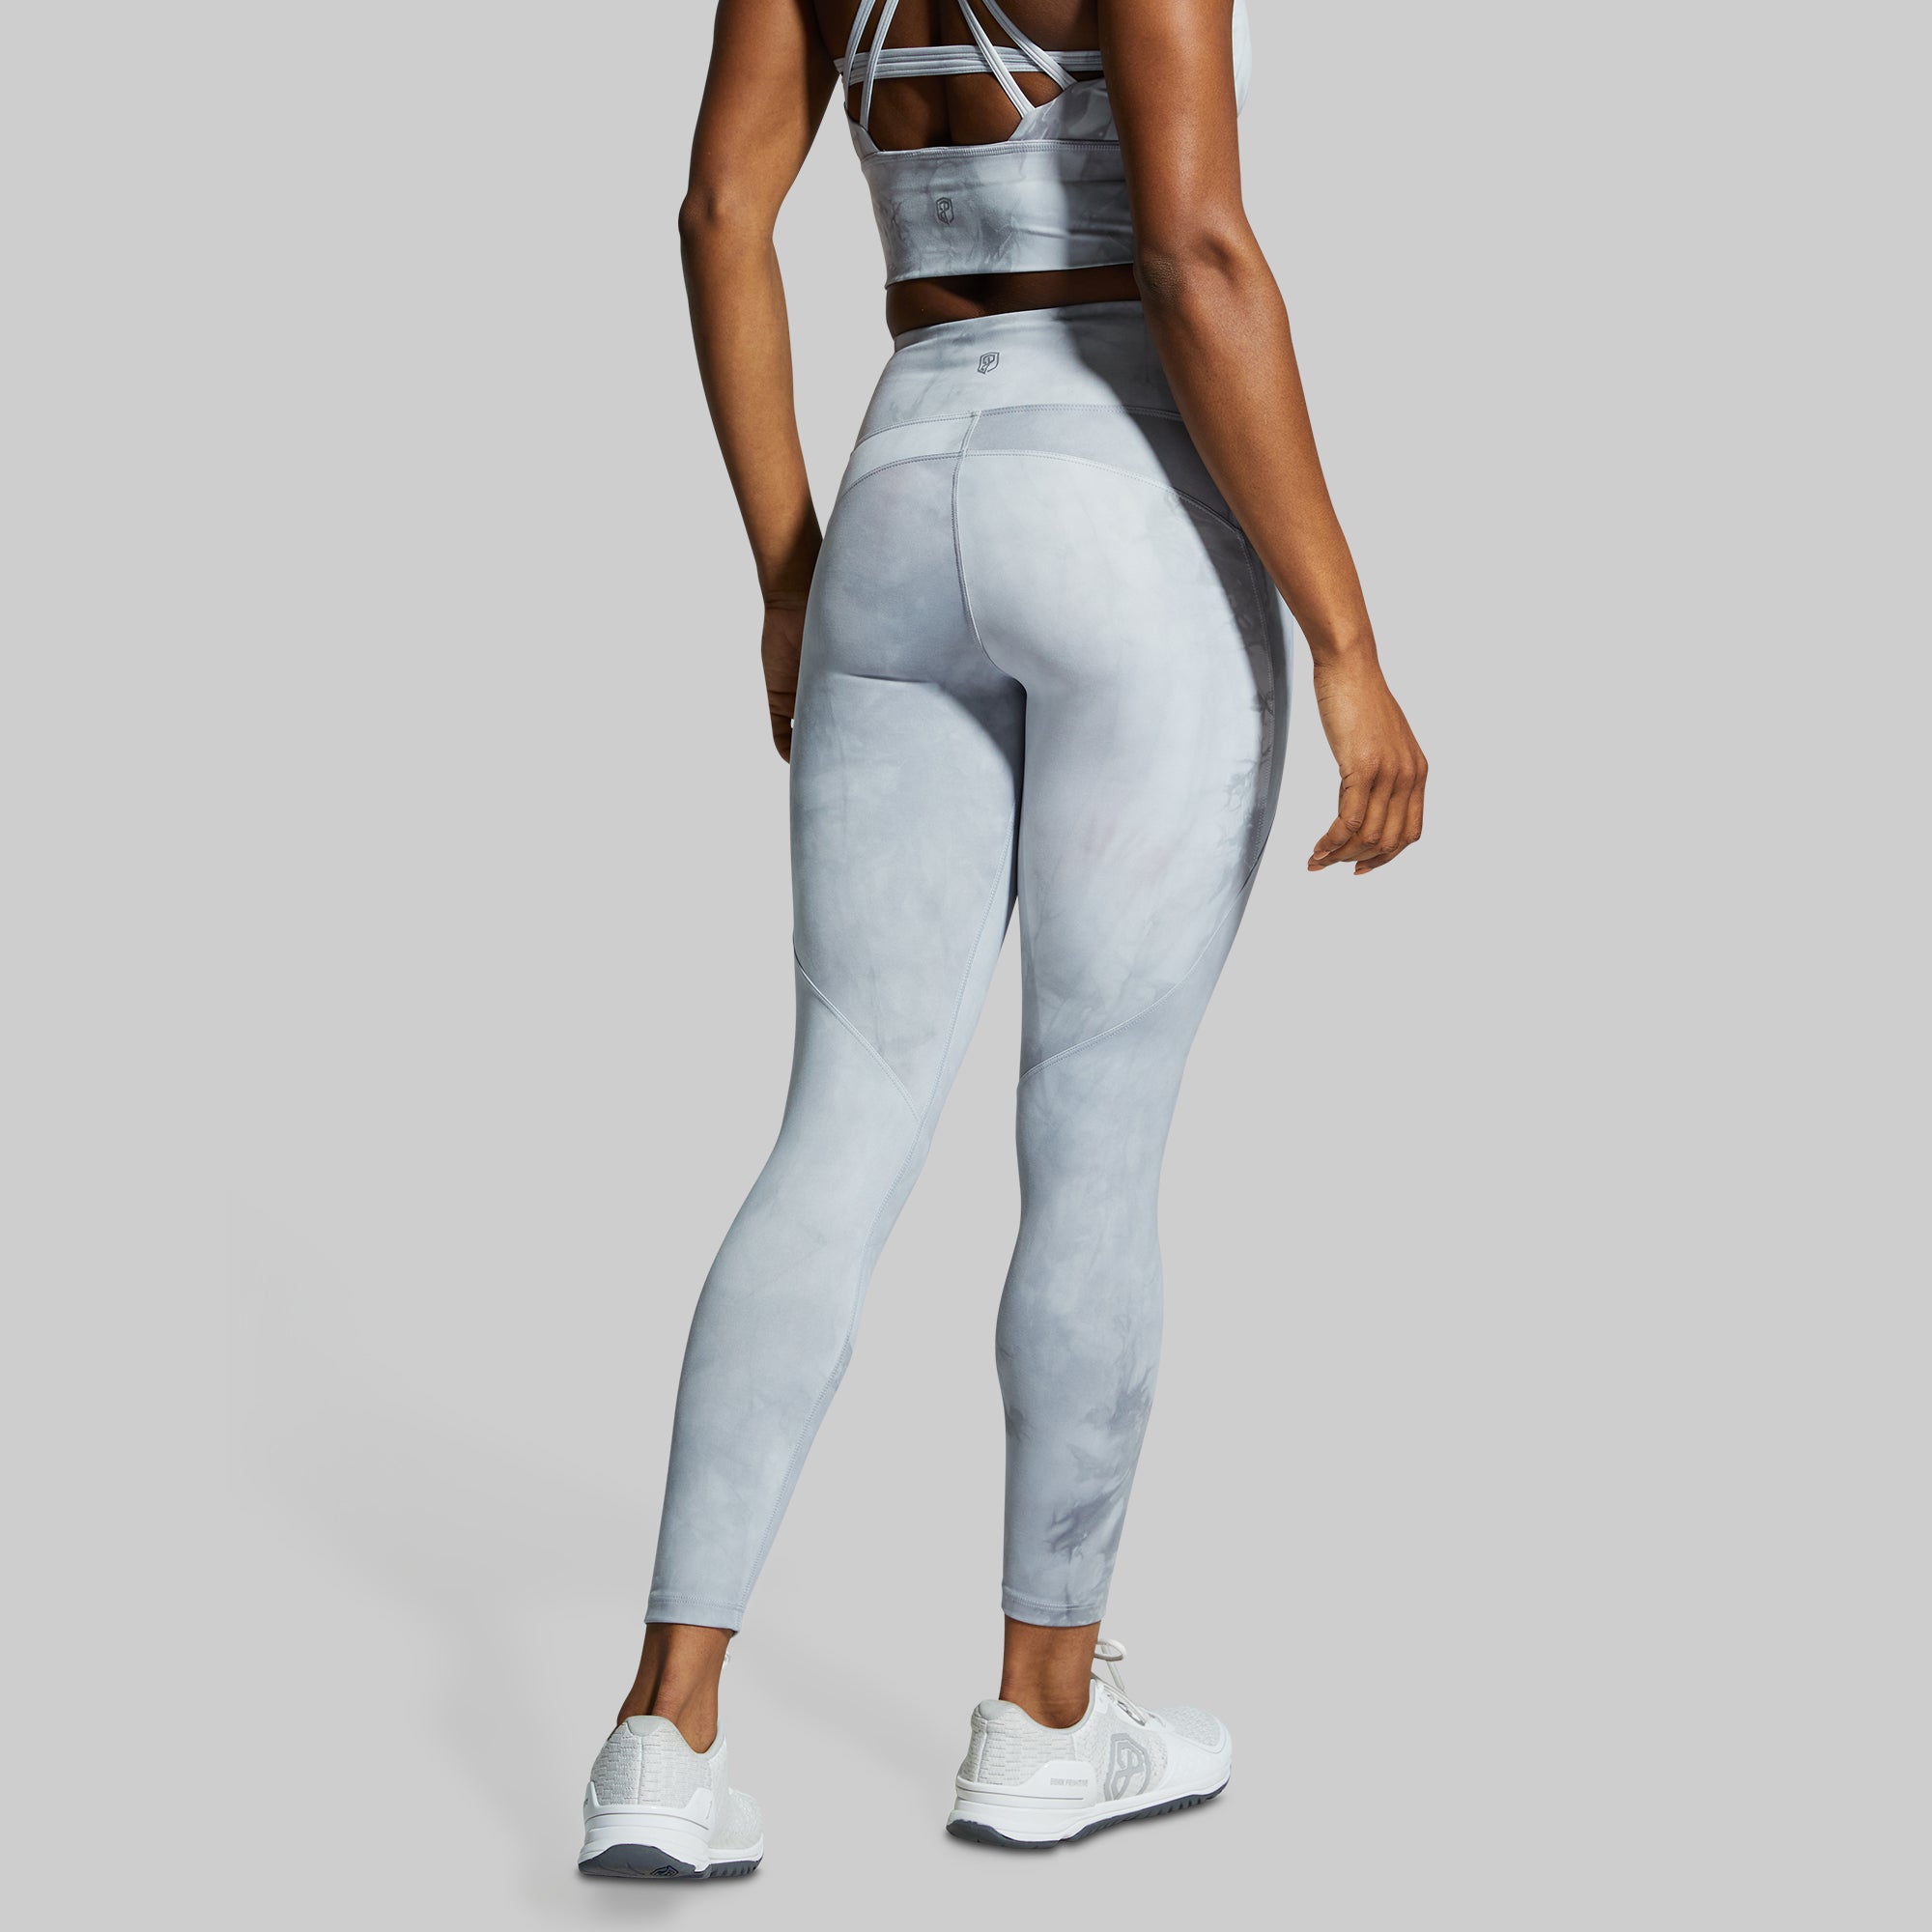 Nike Grey Capri Joggers Women's Medium - $18 - From Alyssa